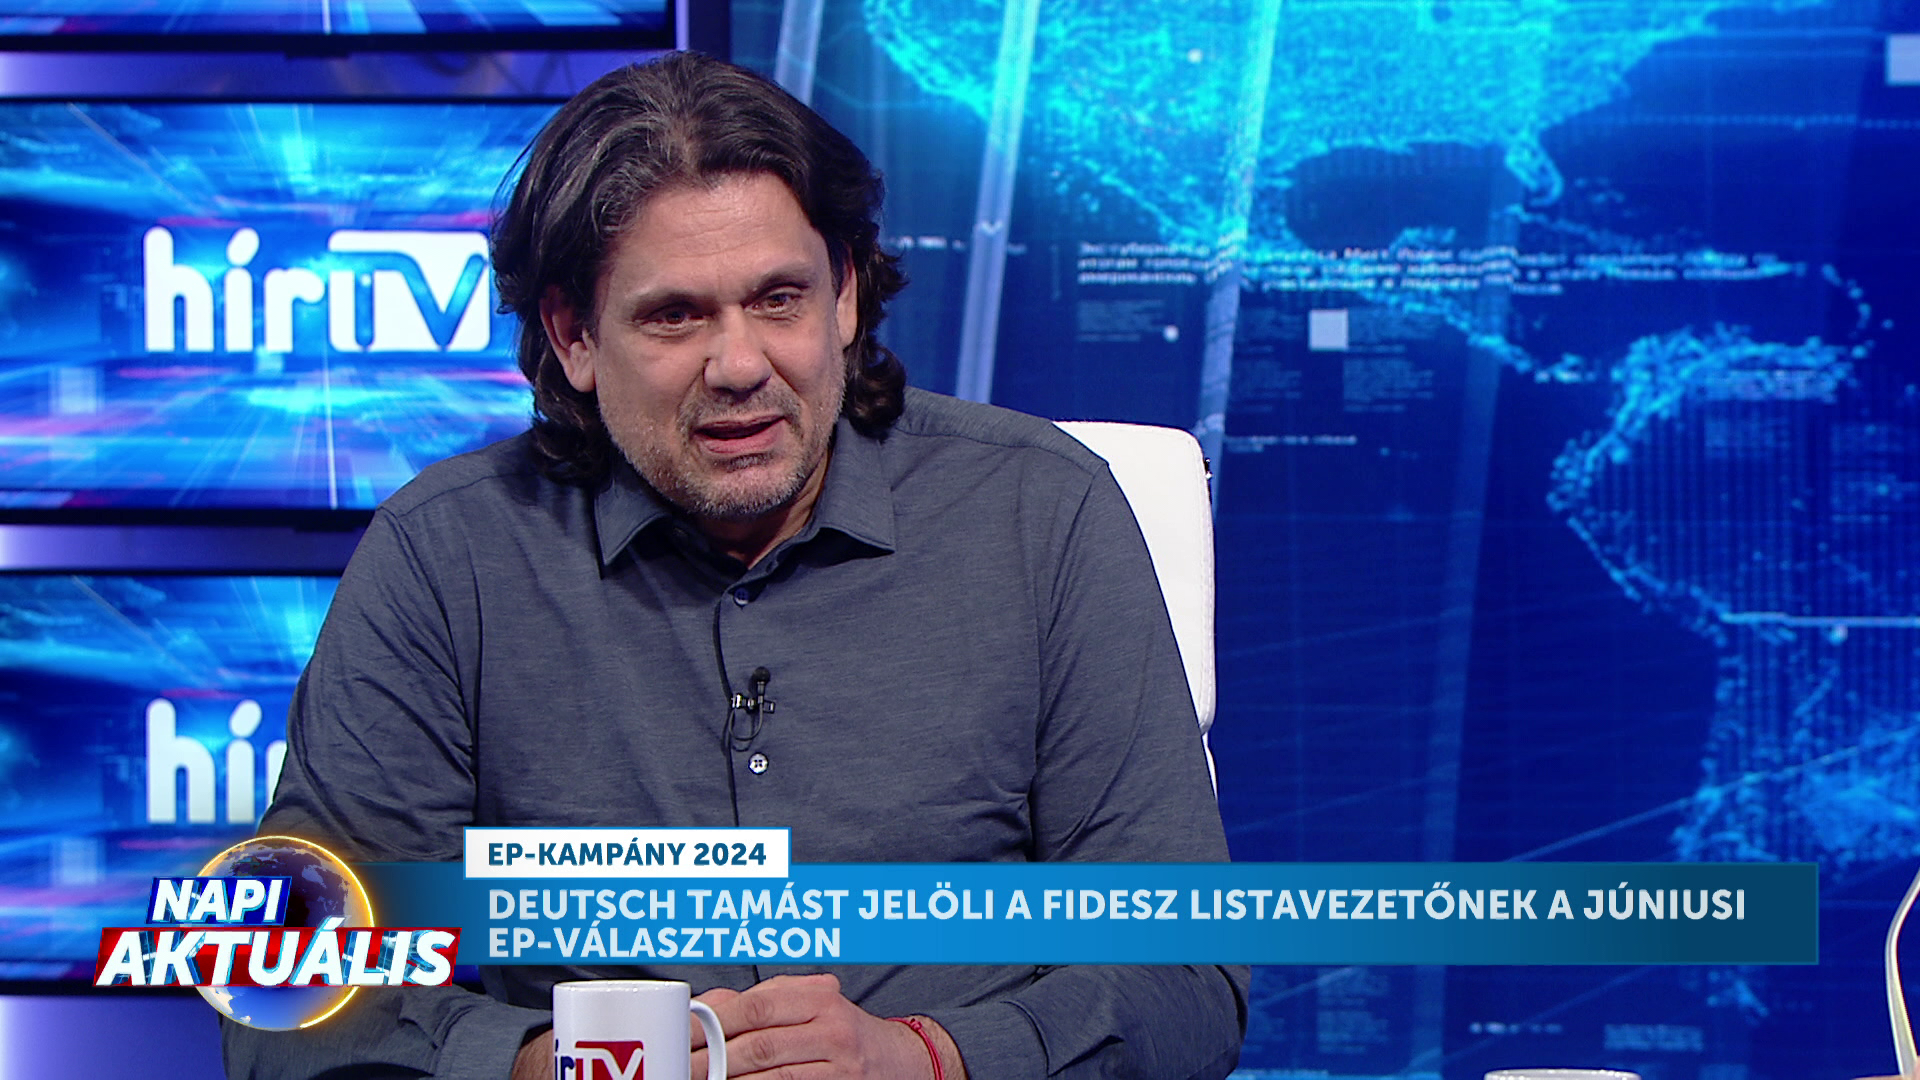 Napi aktuális: Deutsch Tamást jelöli a Fidesz listavezetőnek a júniusi EP-választáson + videó